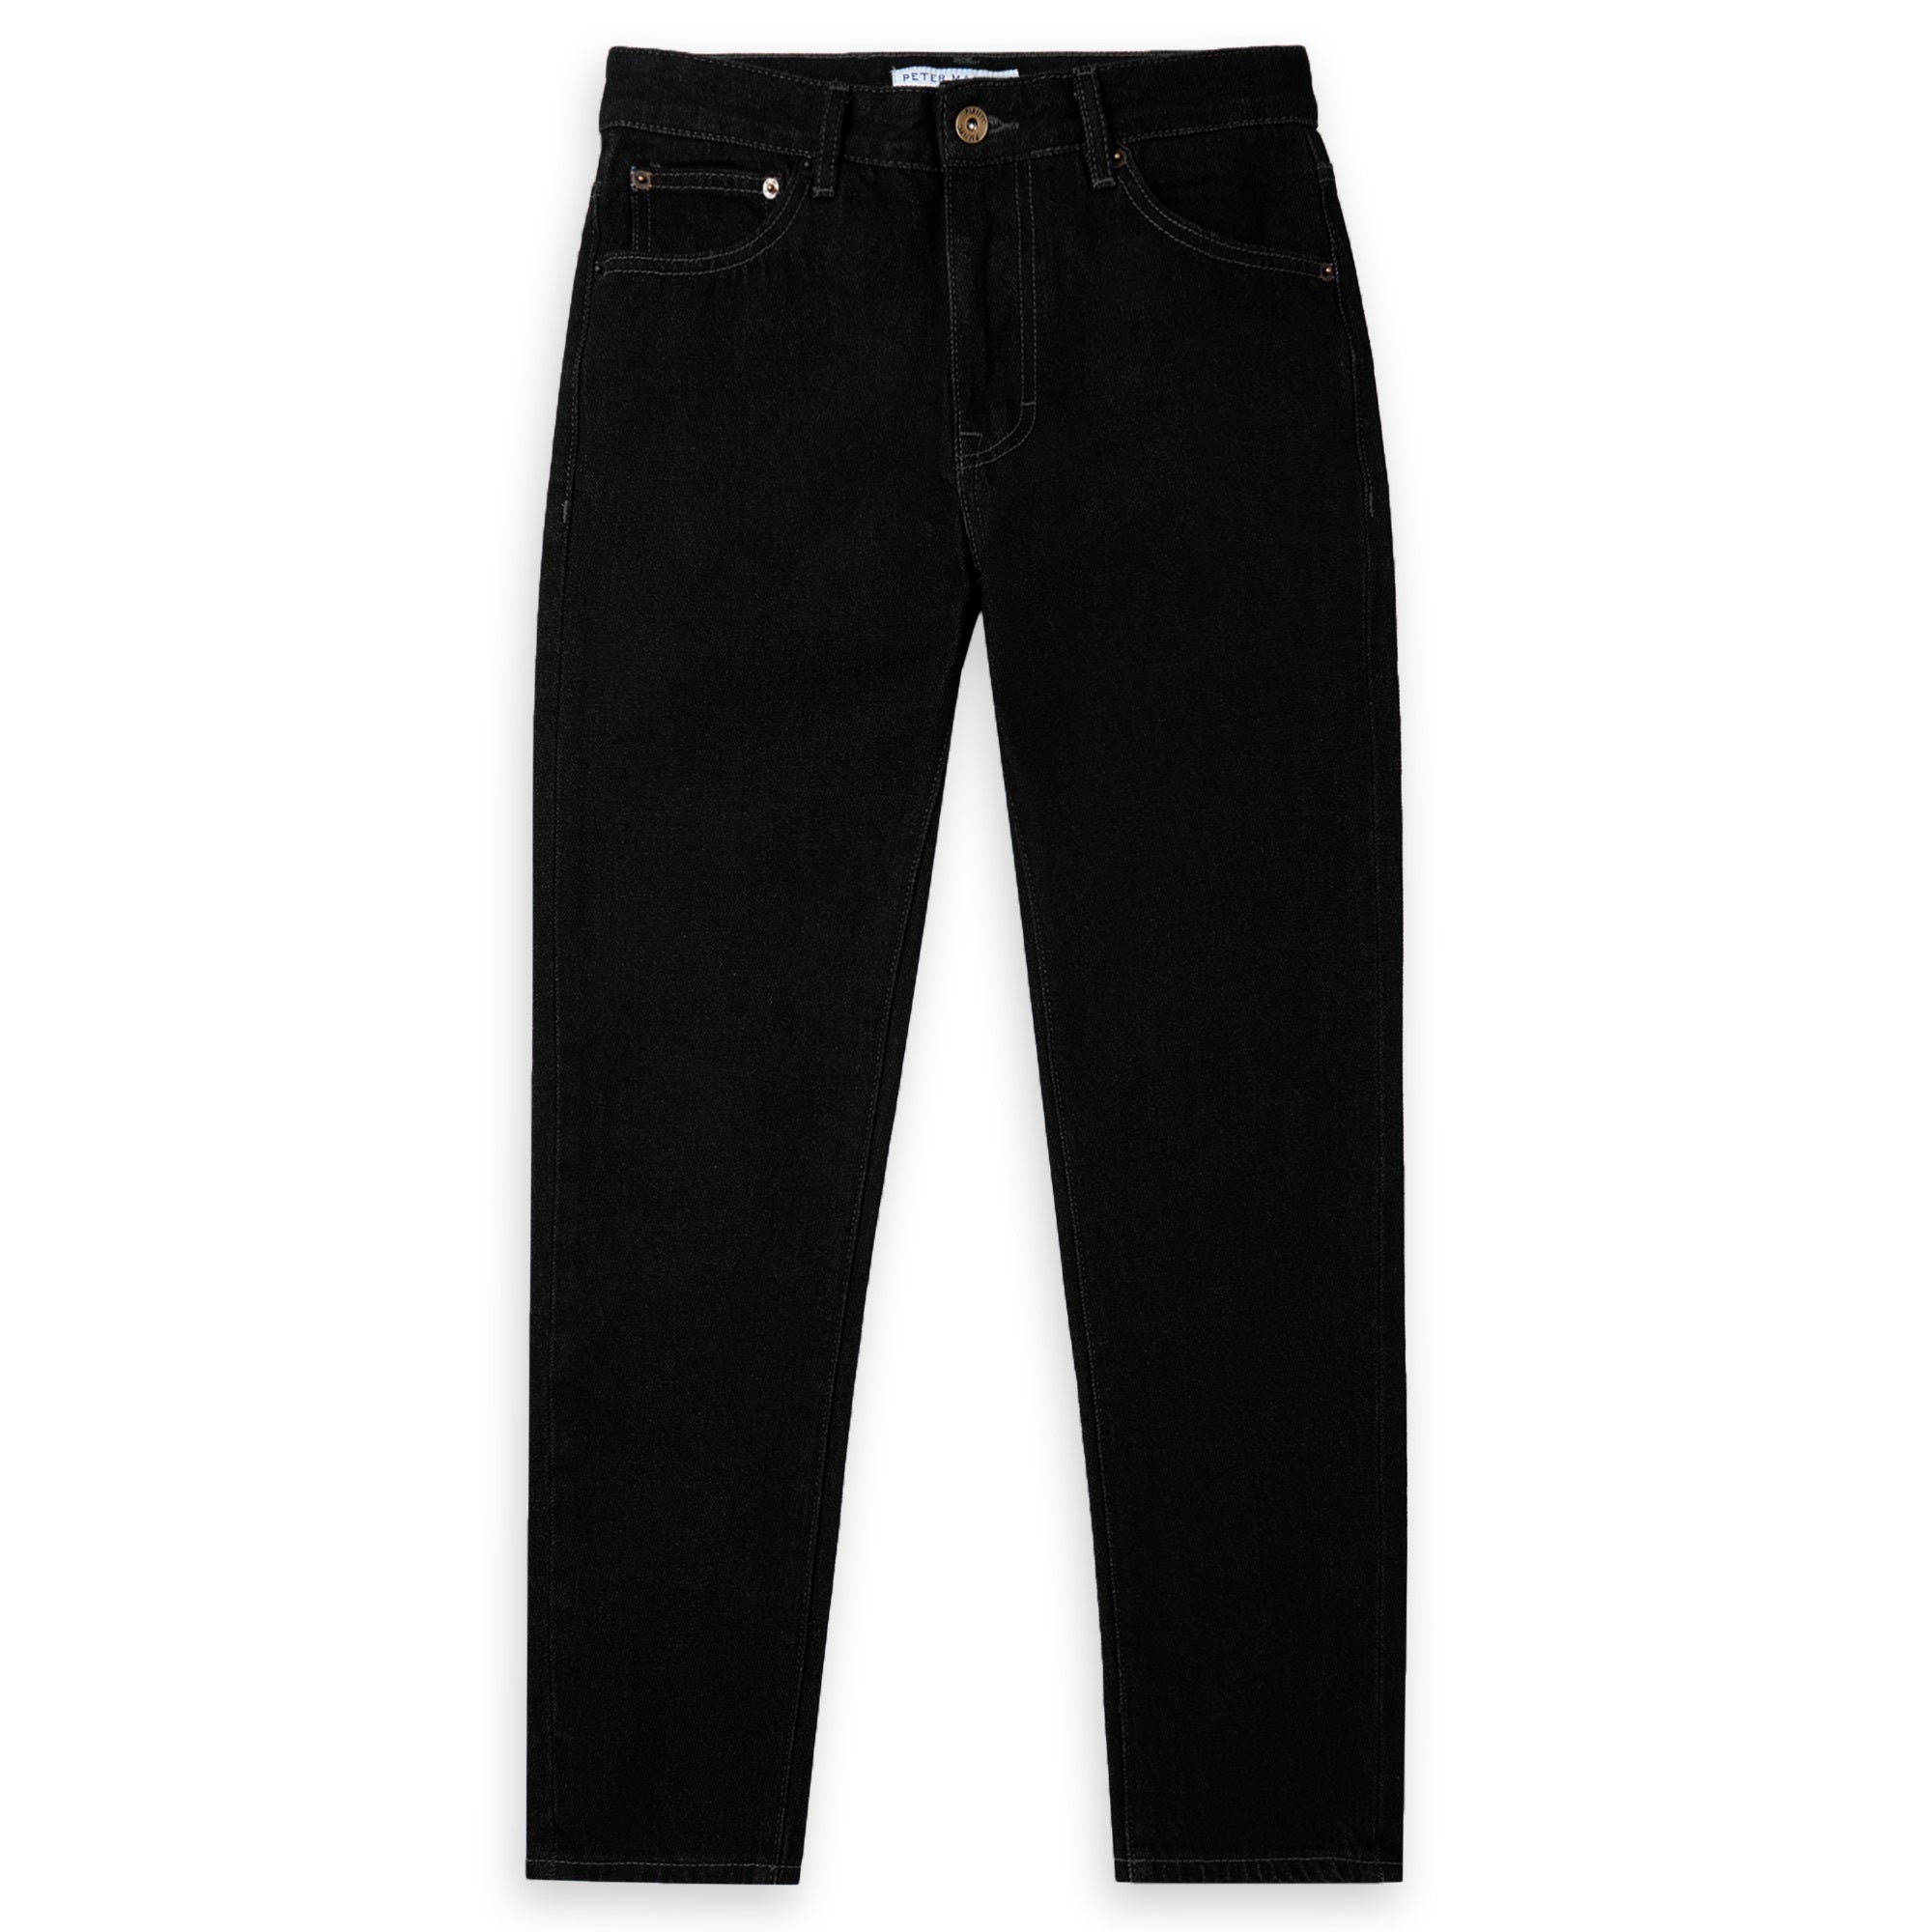 PMNYC Jeans Slim Fit - Black